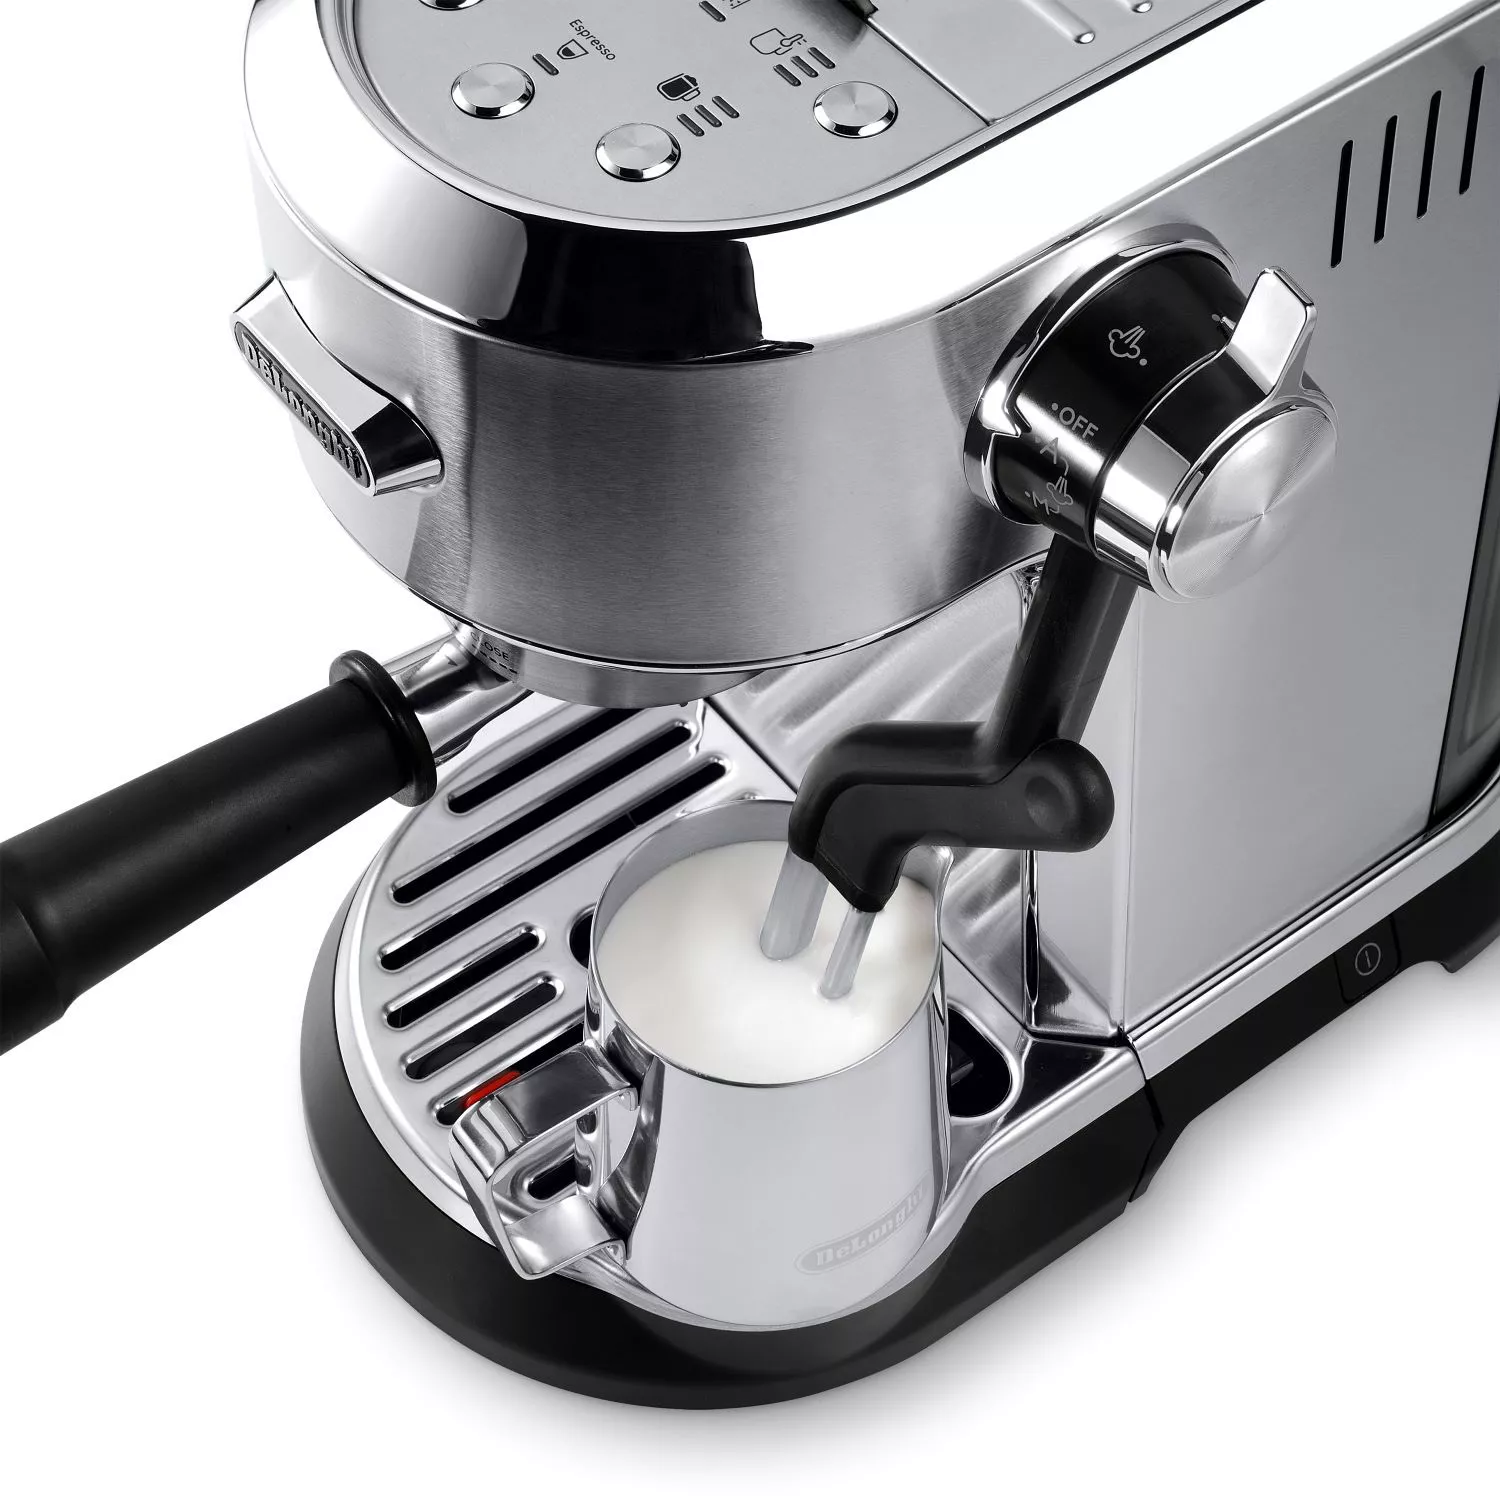 Dedica Maestro Plus Espresso Machine with Automatic Steam Wand